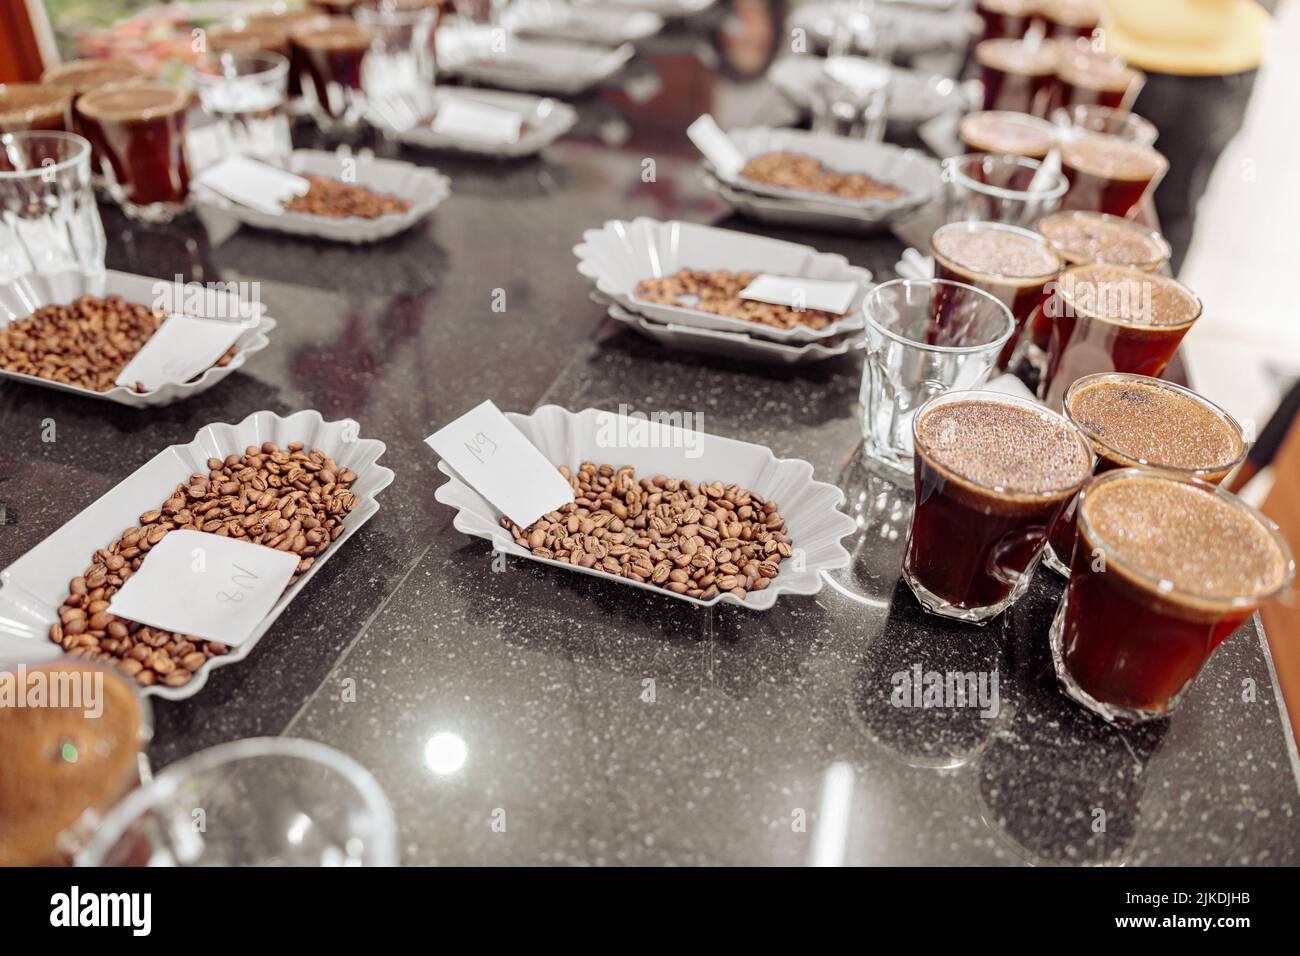 Des verres à café et des grains de café sur table sont prêts pour une dégustation à l'intérieur Banque D'Images